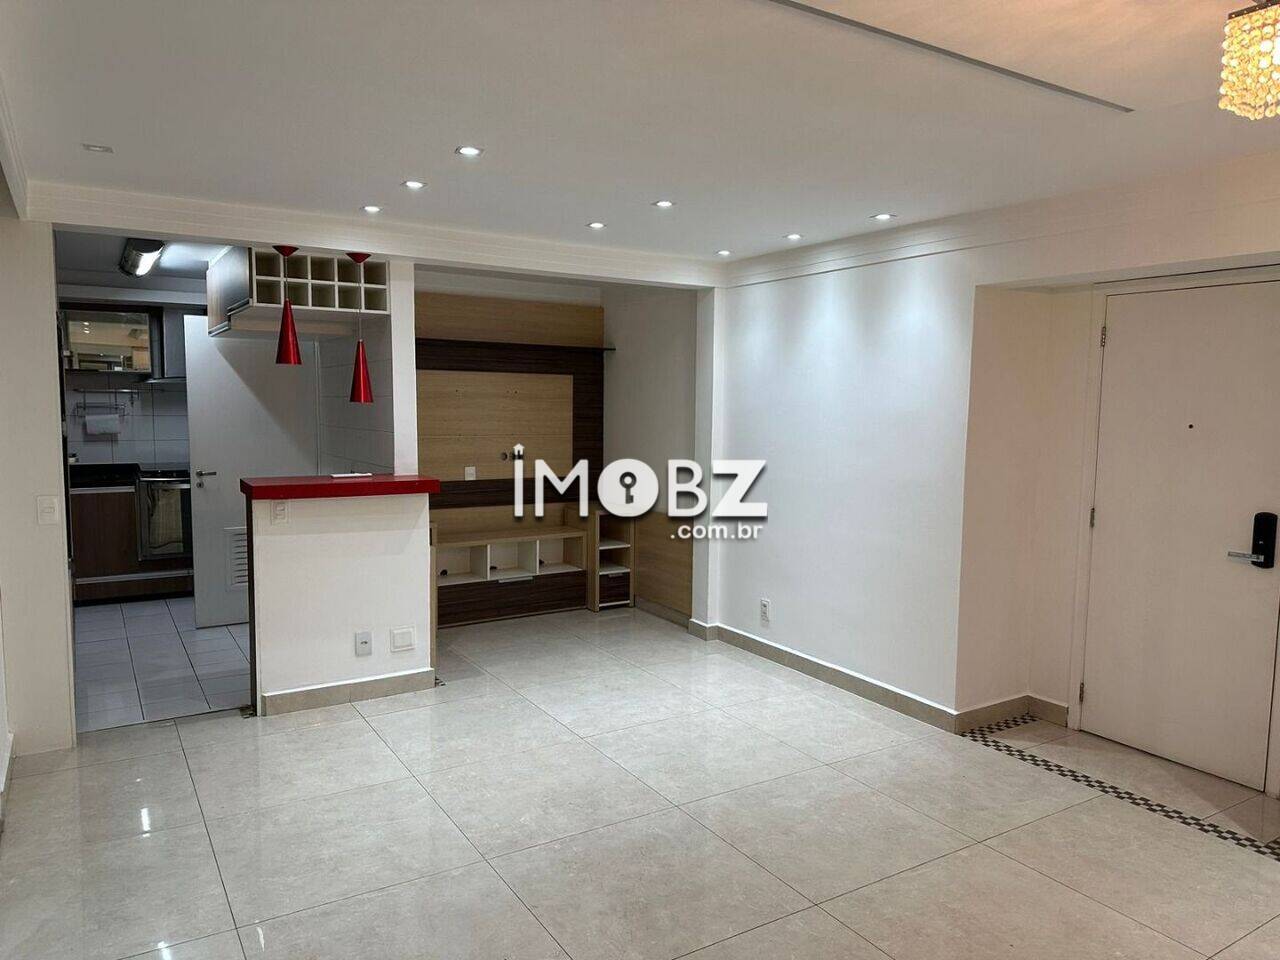 [NOVO] Apartamento à venda no Condomínio Paulistano -  Rua David Ben Gurion, 955 - Jardim Monte Kemel - São Paulo - SP - CEP 05634-000